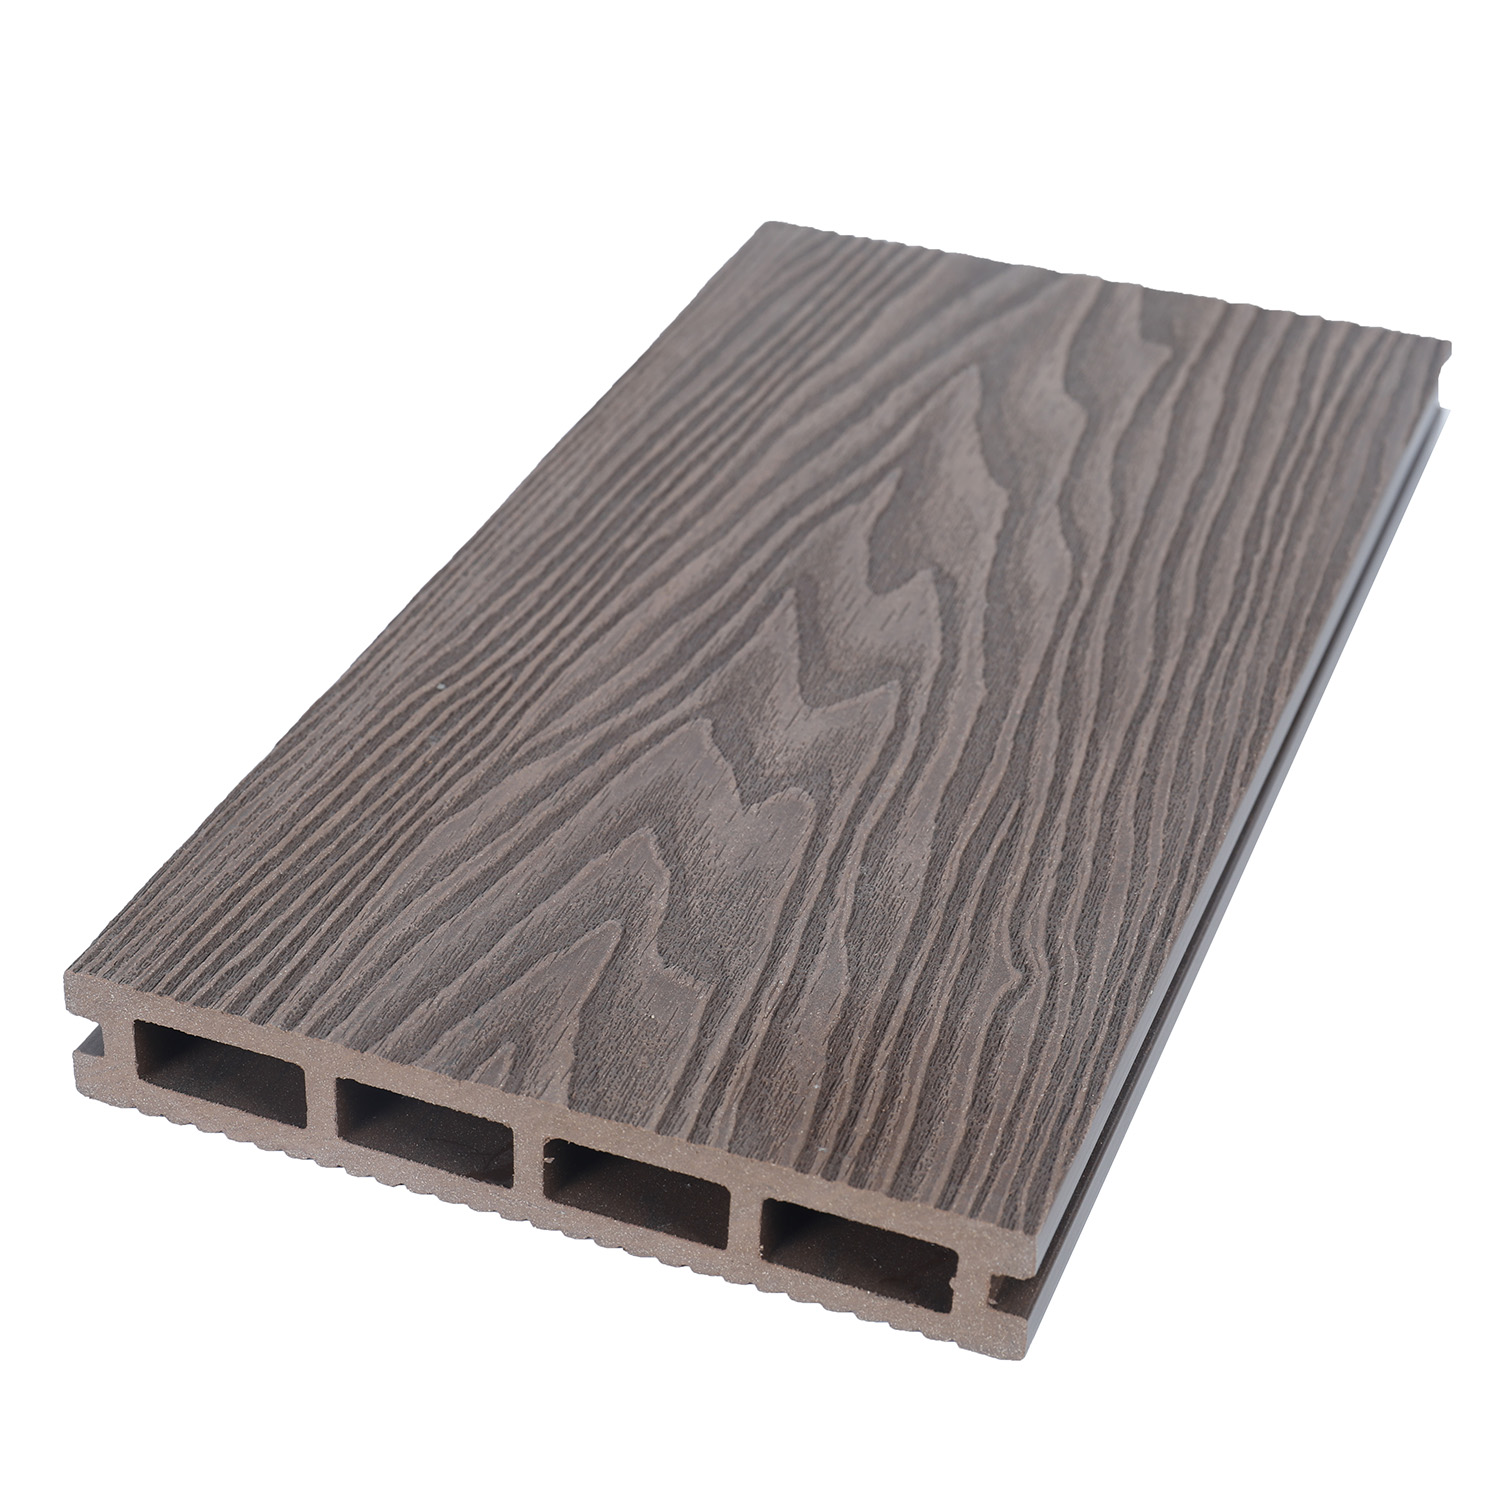 Hot sales 3d wood grain wpc wood plastic composite decking